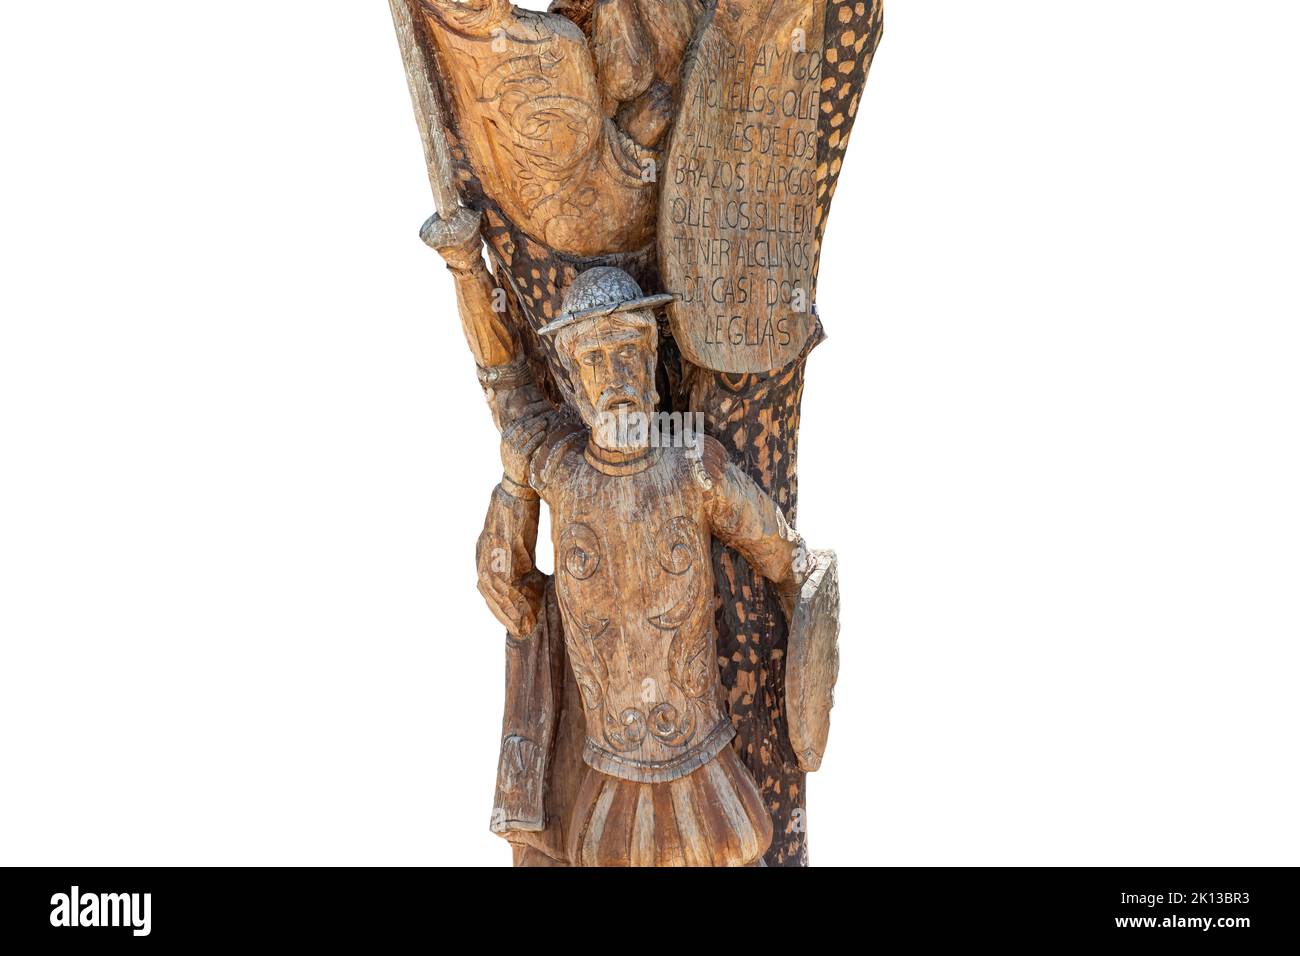 Particolare della statua di Don Chisciotte scolpita nel tronco di un albero. Il testo fa parte del libro di Don Miguel de Cervantes, Don Chisciotte de la Mancha Foto Stock